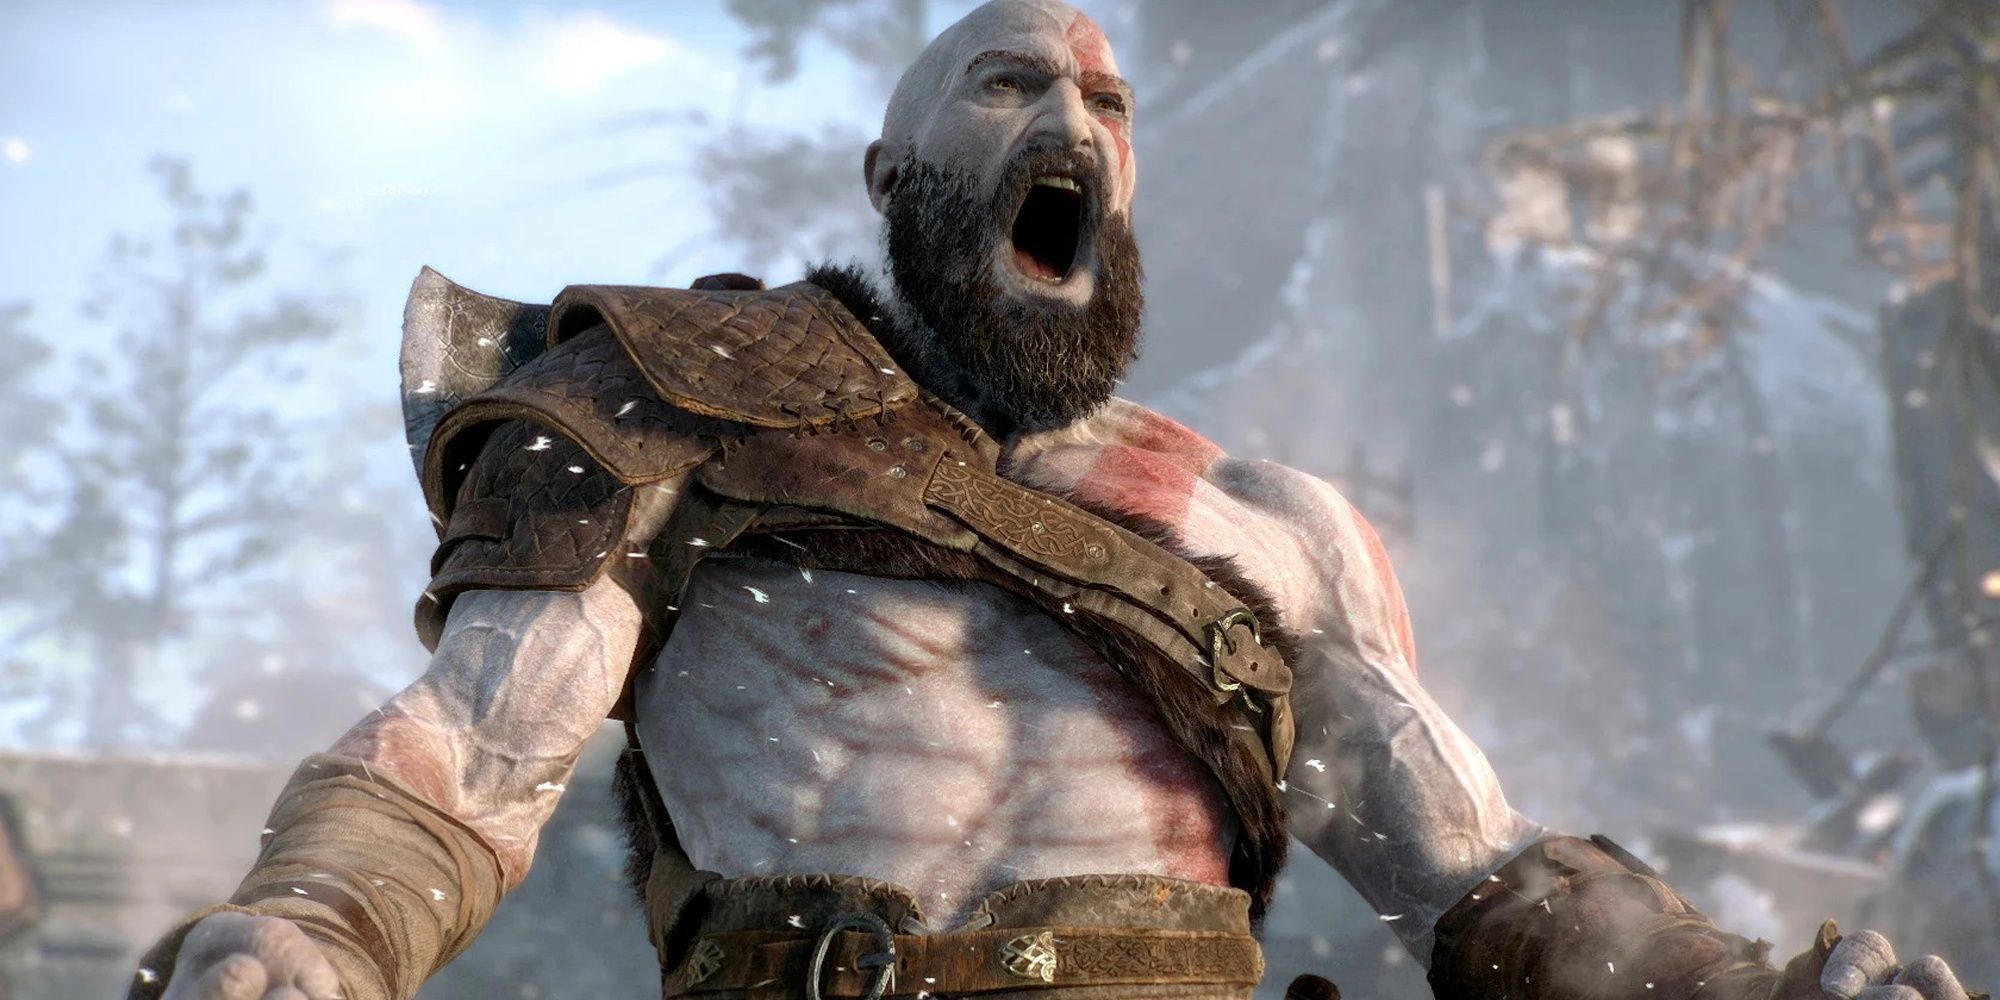 God of War Kratos yelling